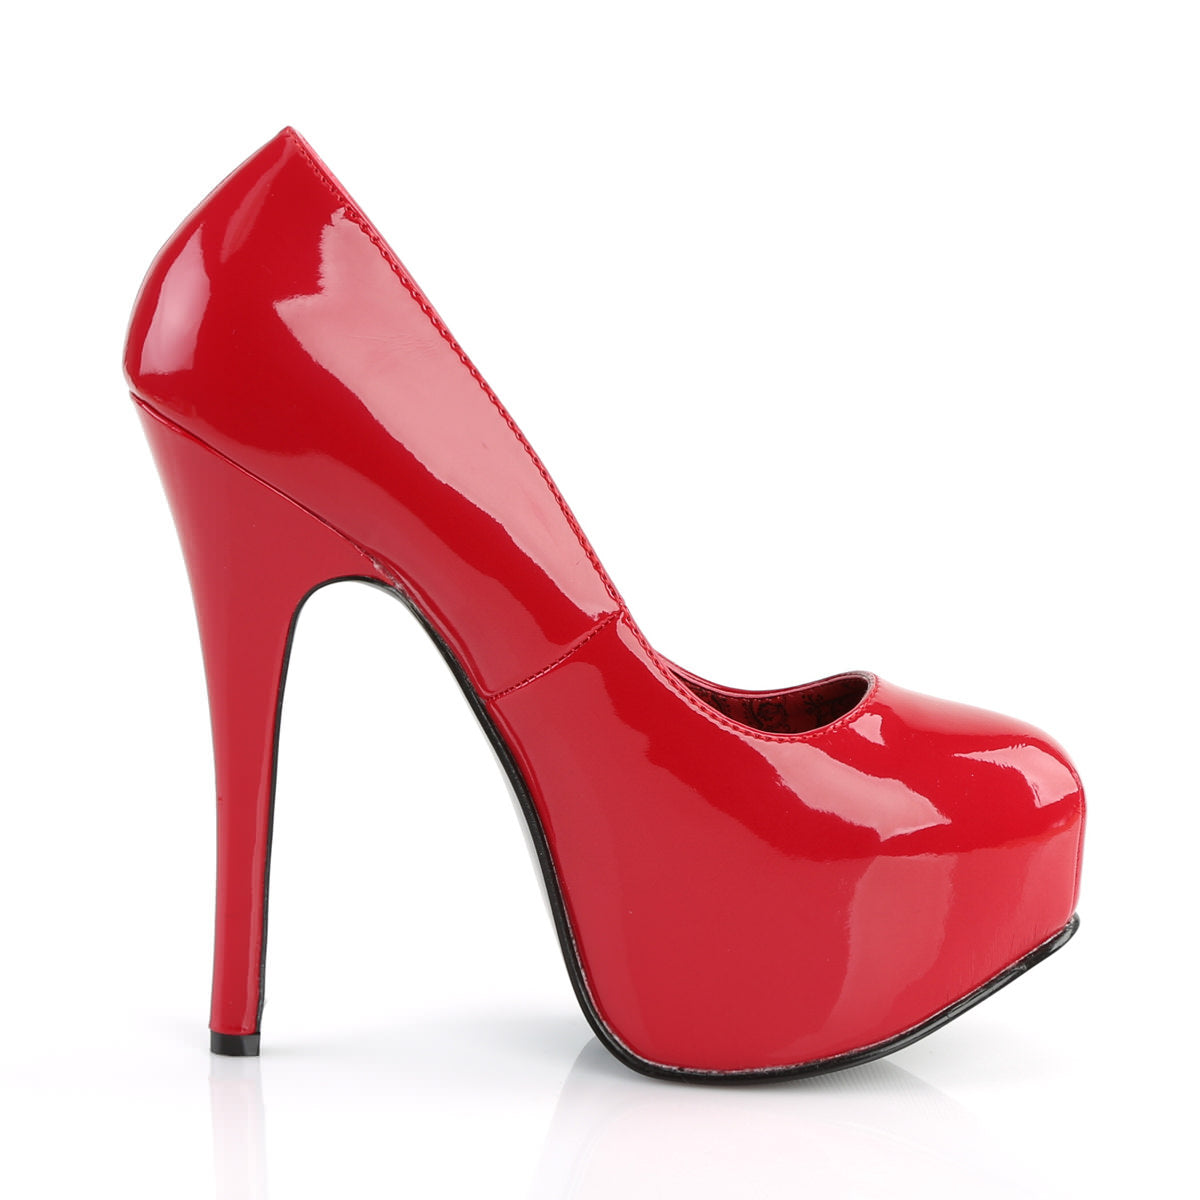 5 Inch Heel TEEZE-06 Red Patent